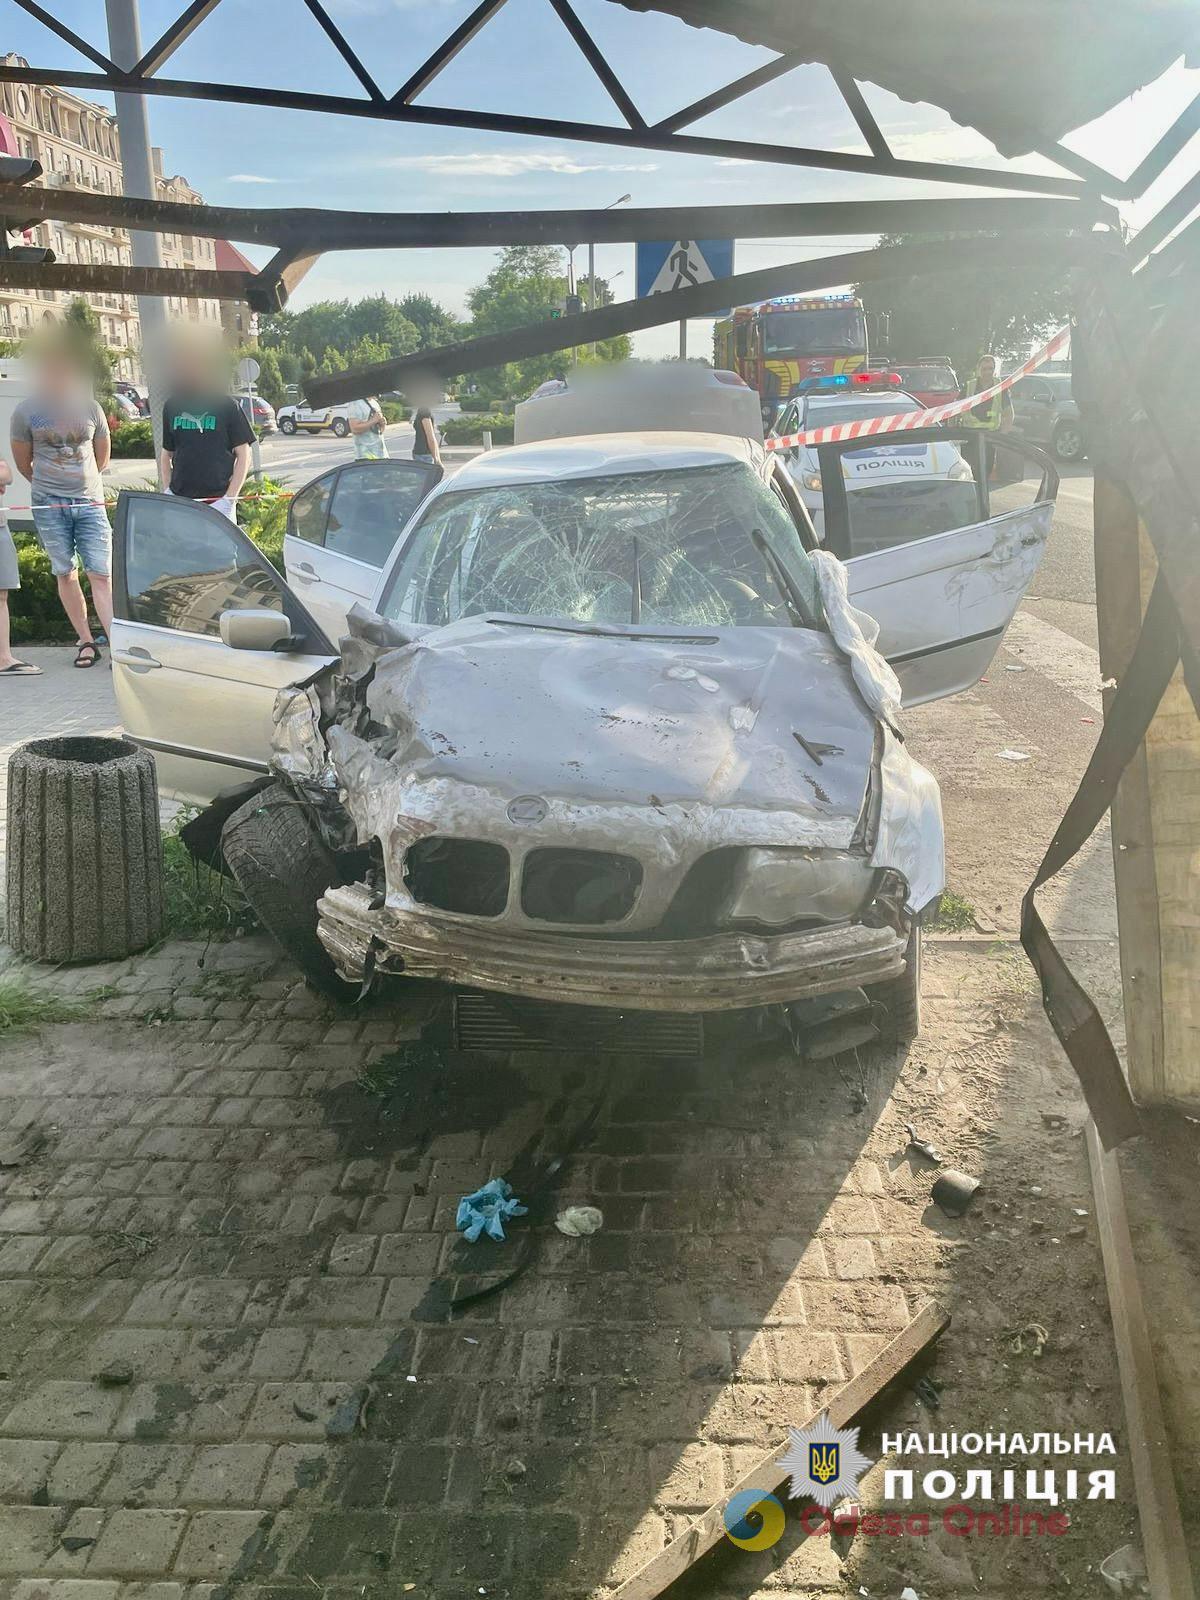 Итоги дня: трагедия на одесском пляже и лихач на BMW в Фонтанке